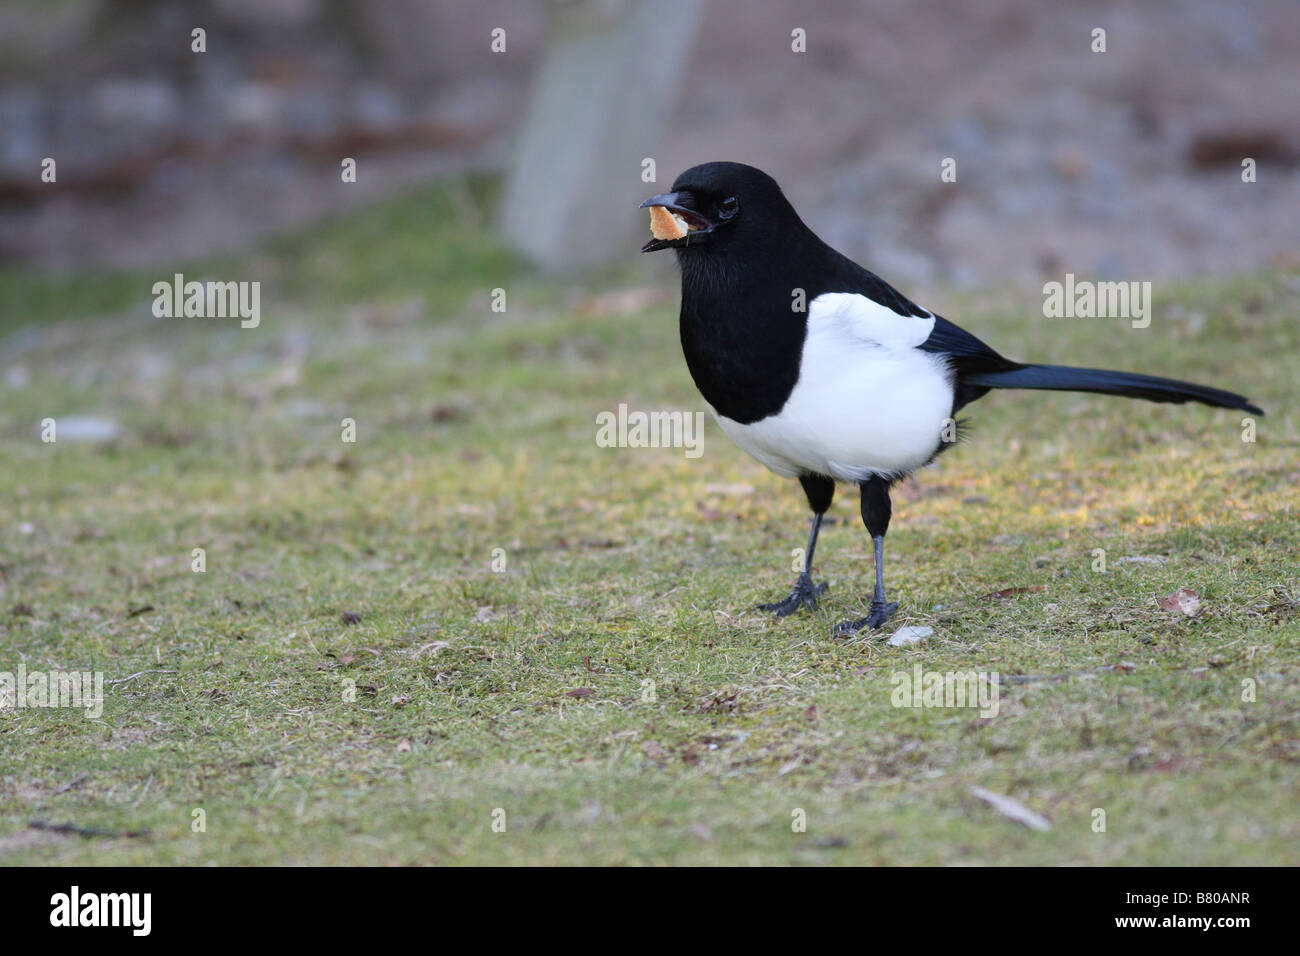 Pica pica, Pied Magpie avec du pain dans la bouche, sur l'herbe, un oiseau en noir et blanc Banque D'Images